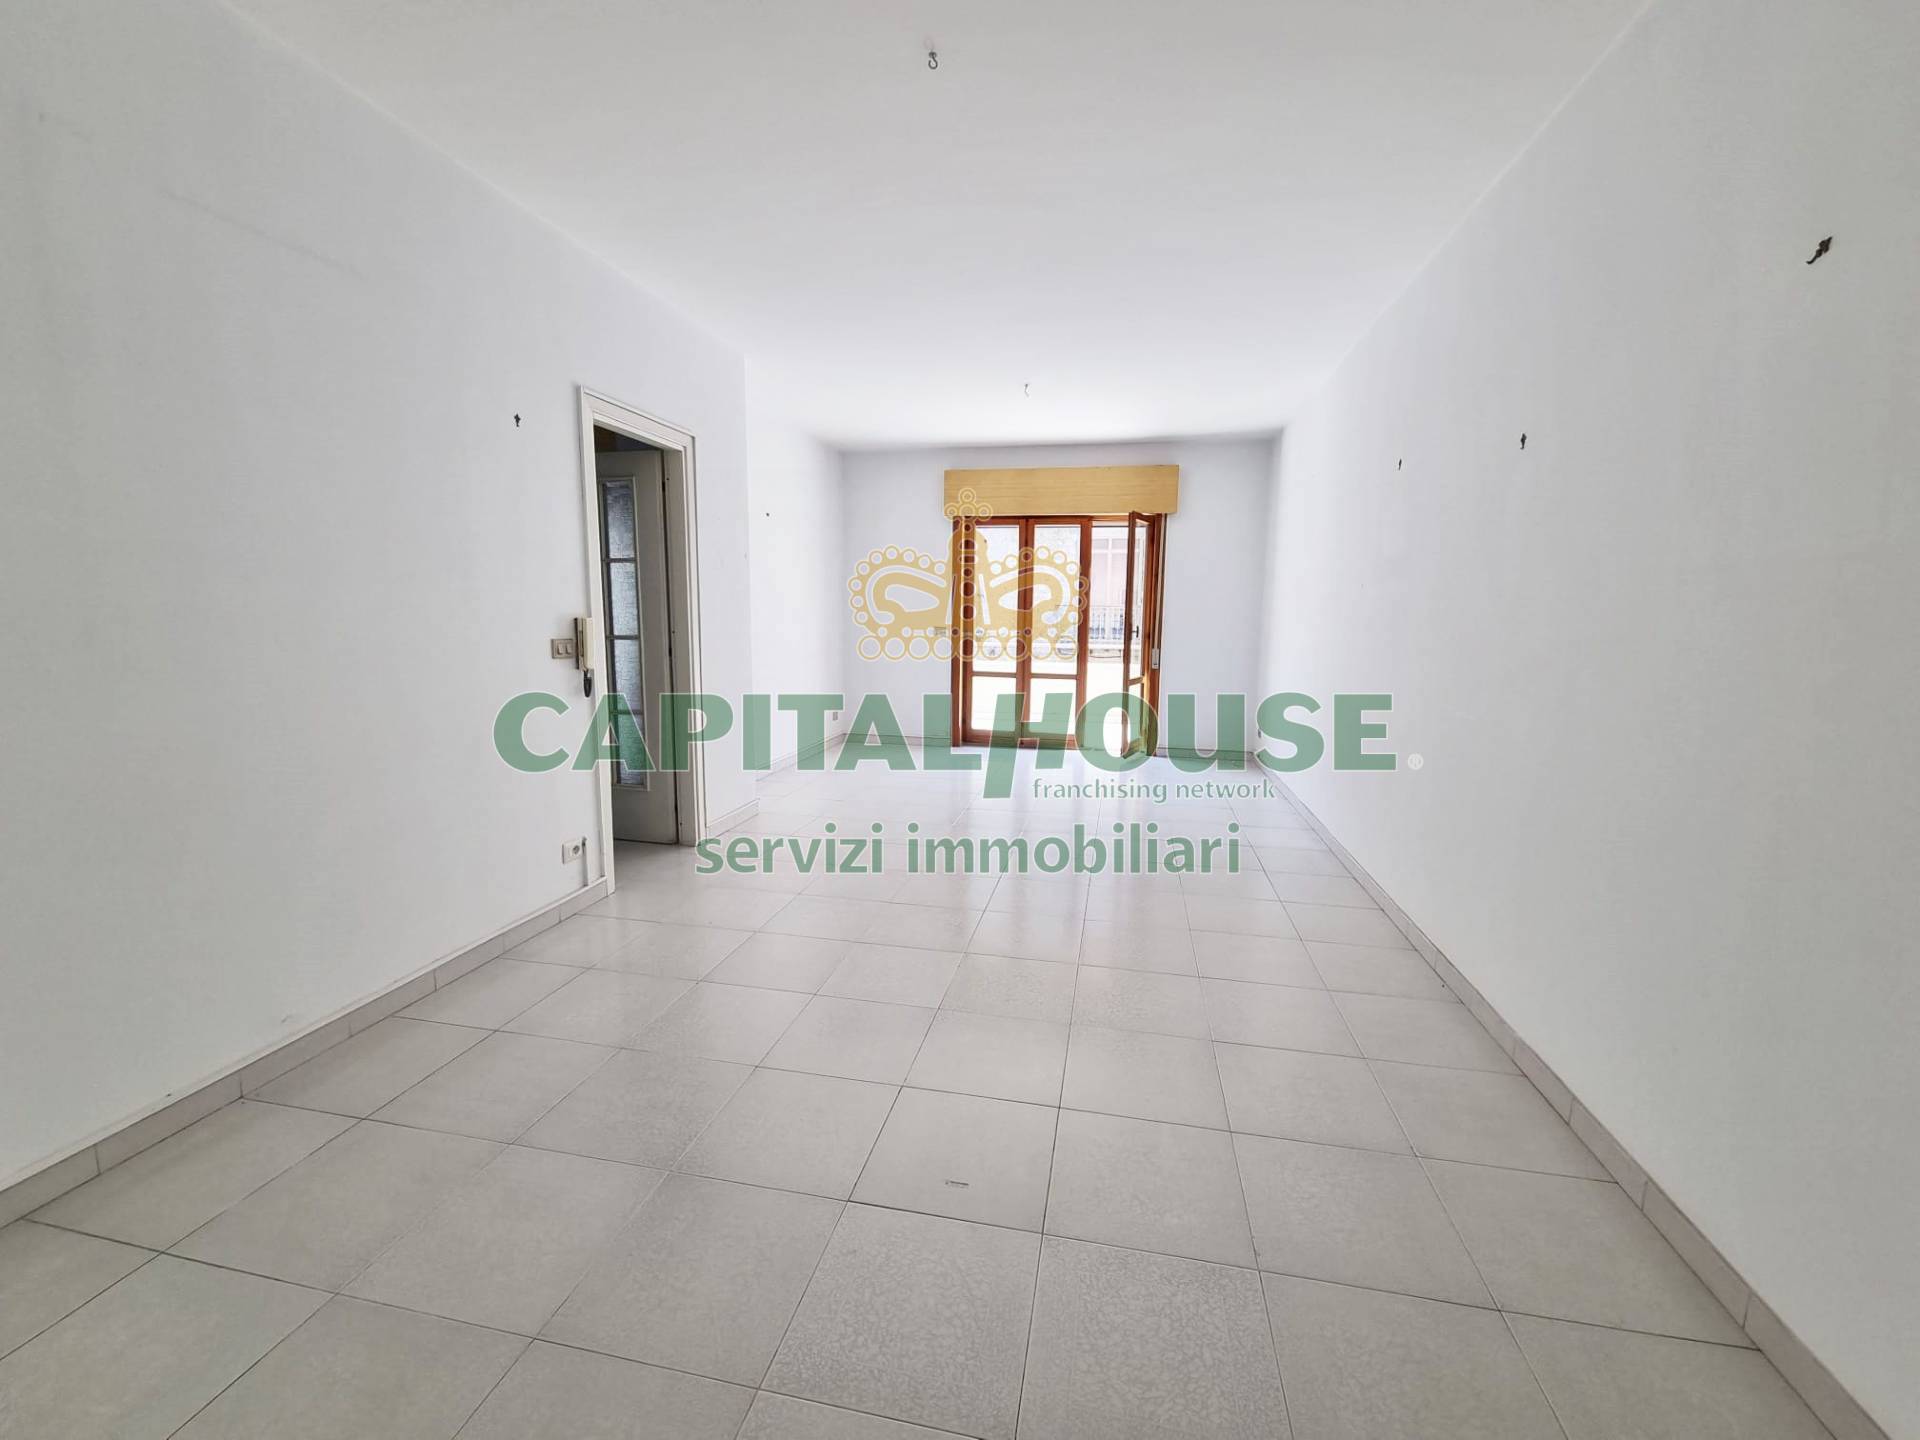 Appartamento in affitto a Cicciano, 3 locali, prezzo € 500 | CambioCasa.it